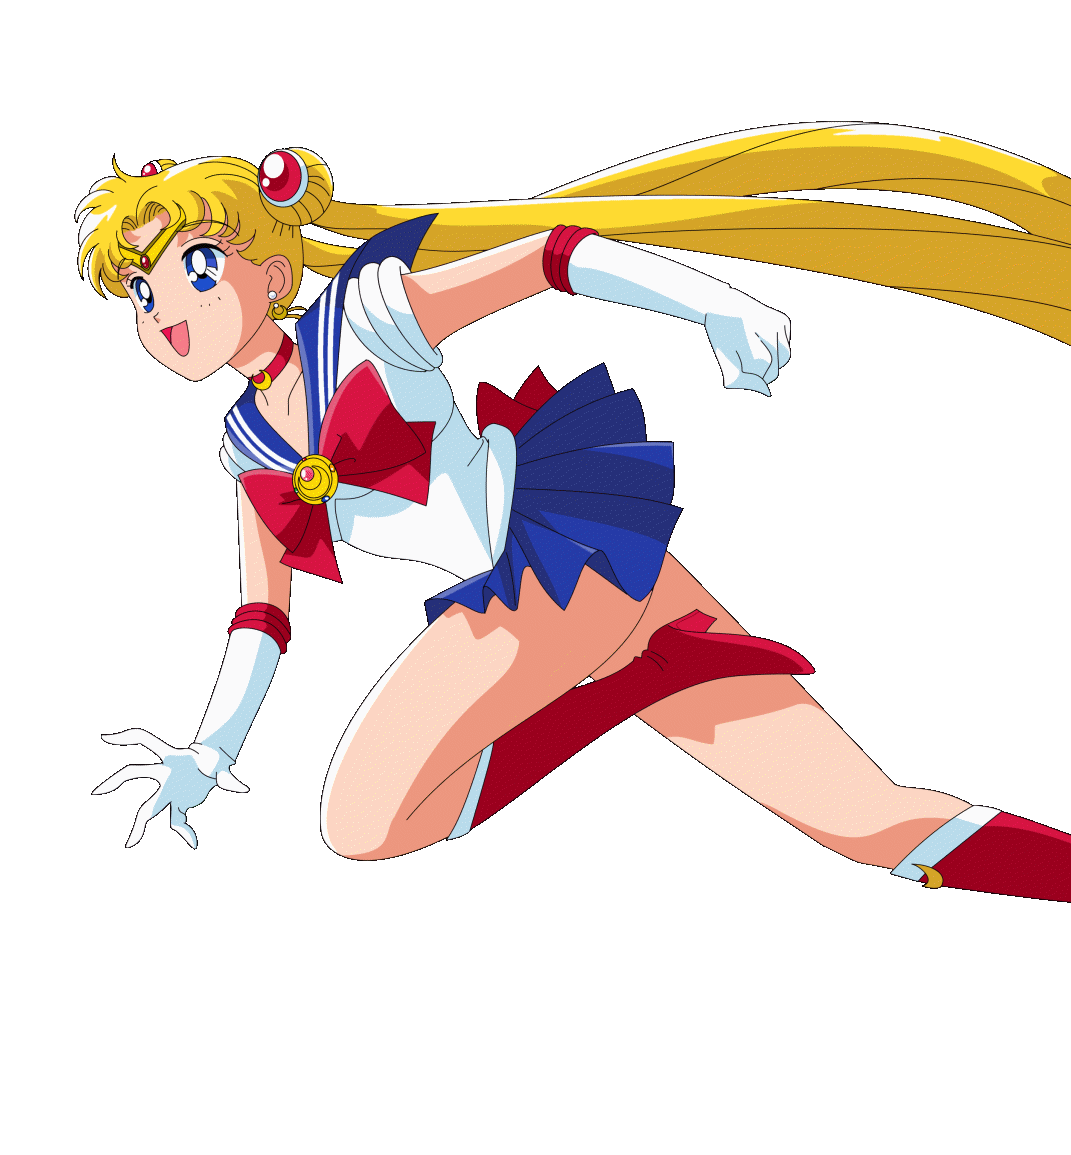 ❤ 美少女戦士 ❤ Sailor Moon ❤